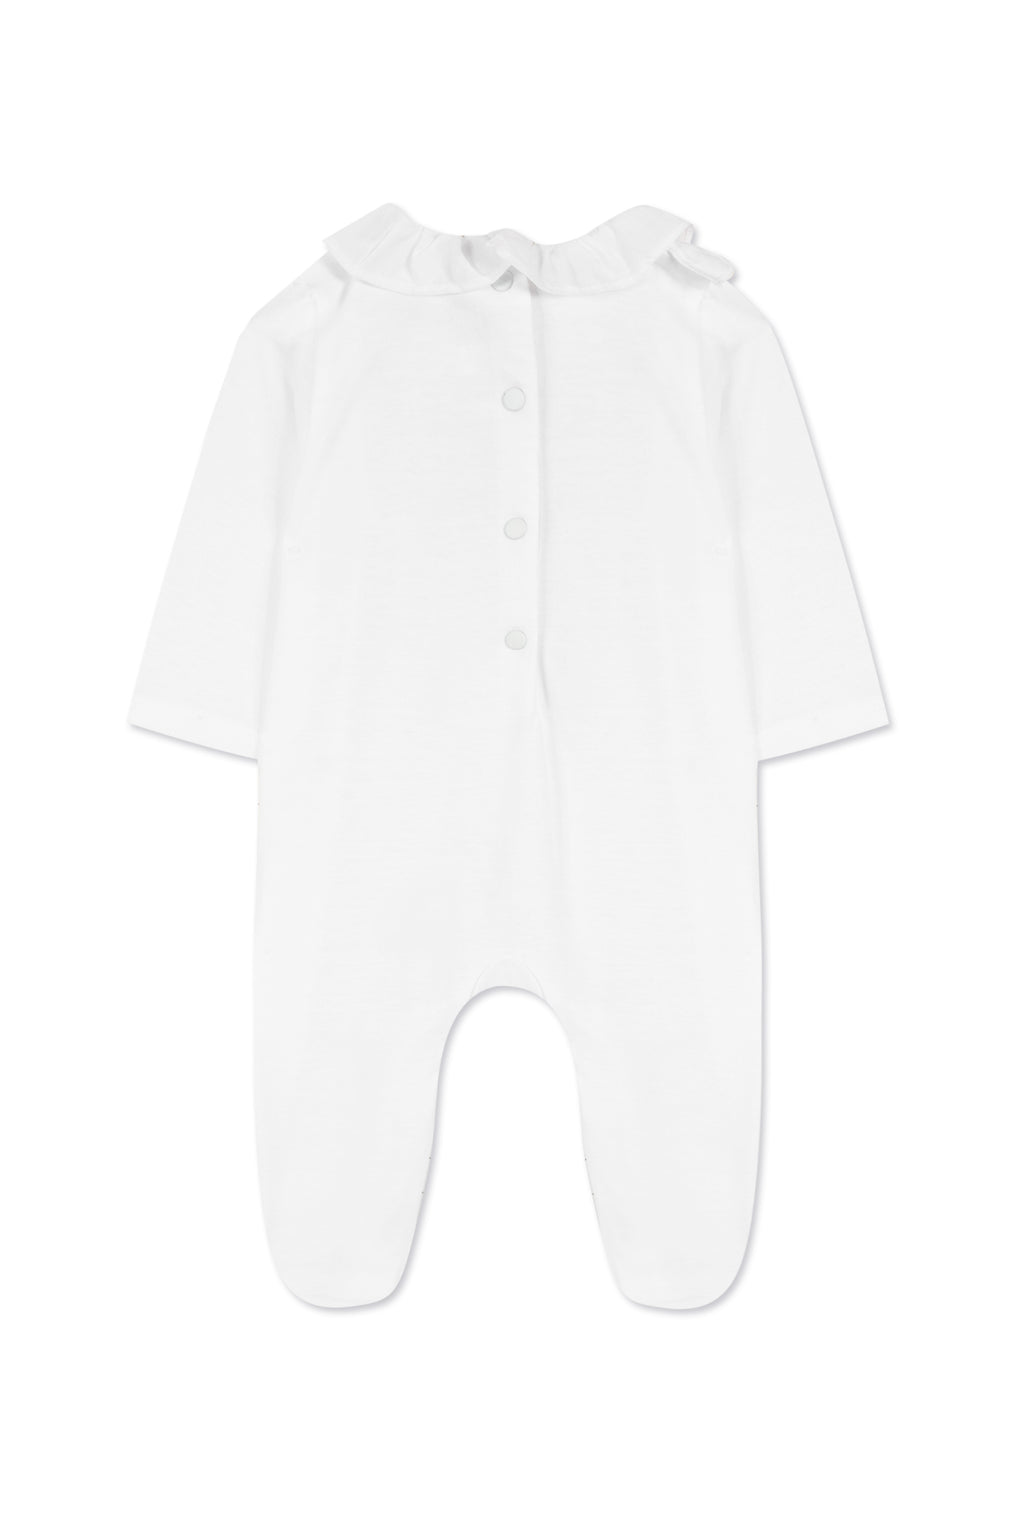 Pijama - Blanco Cuello babero bordado